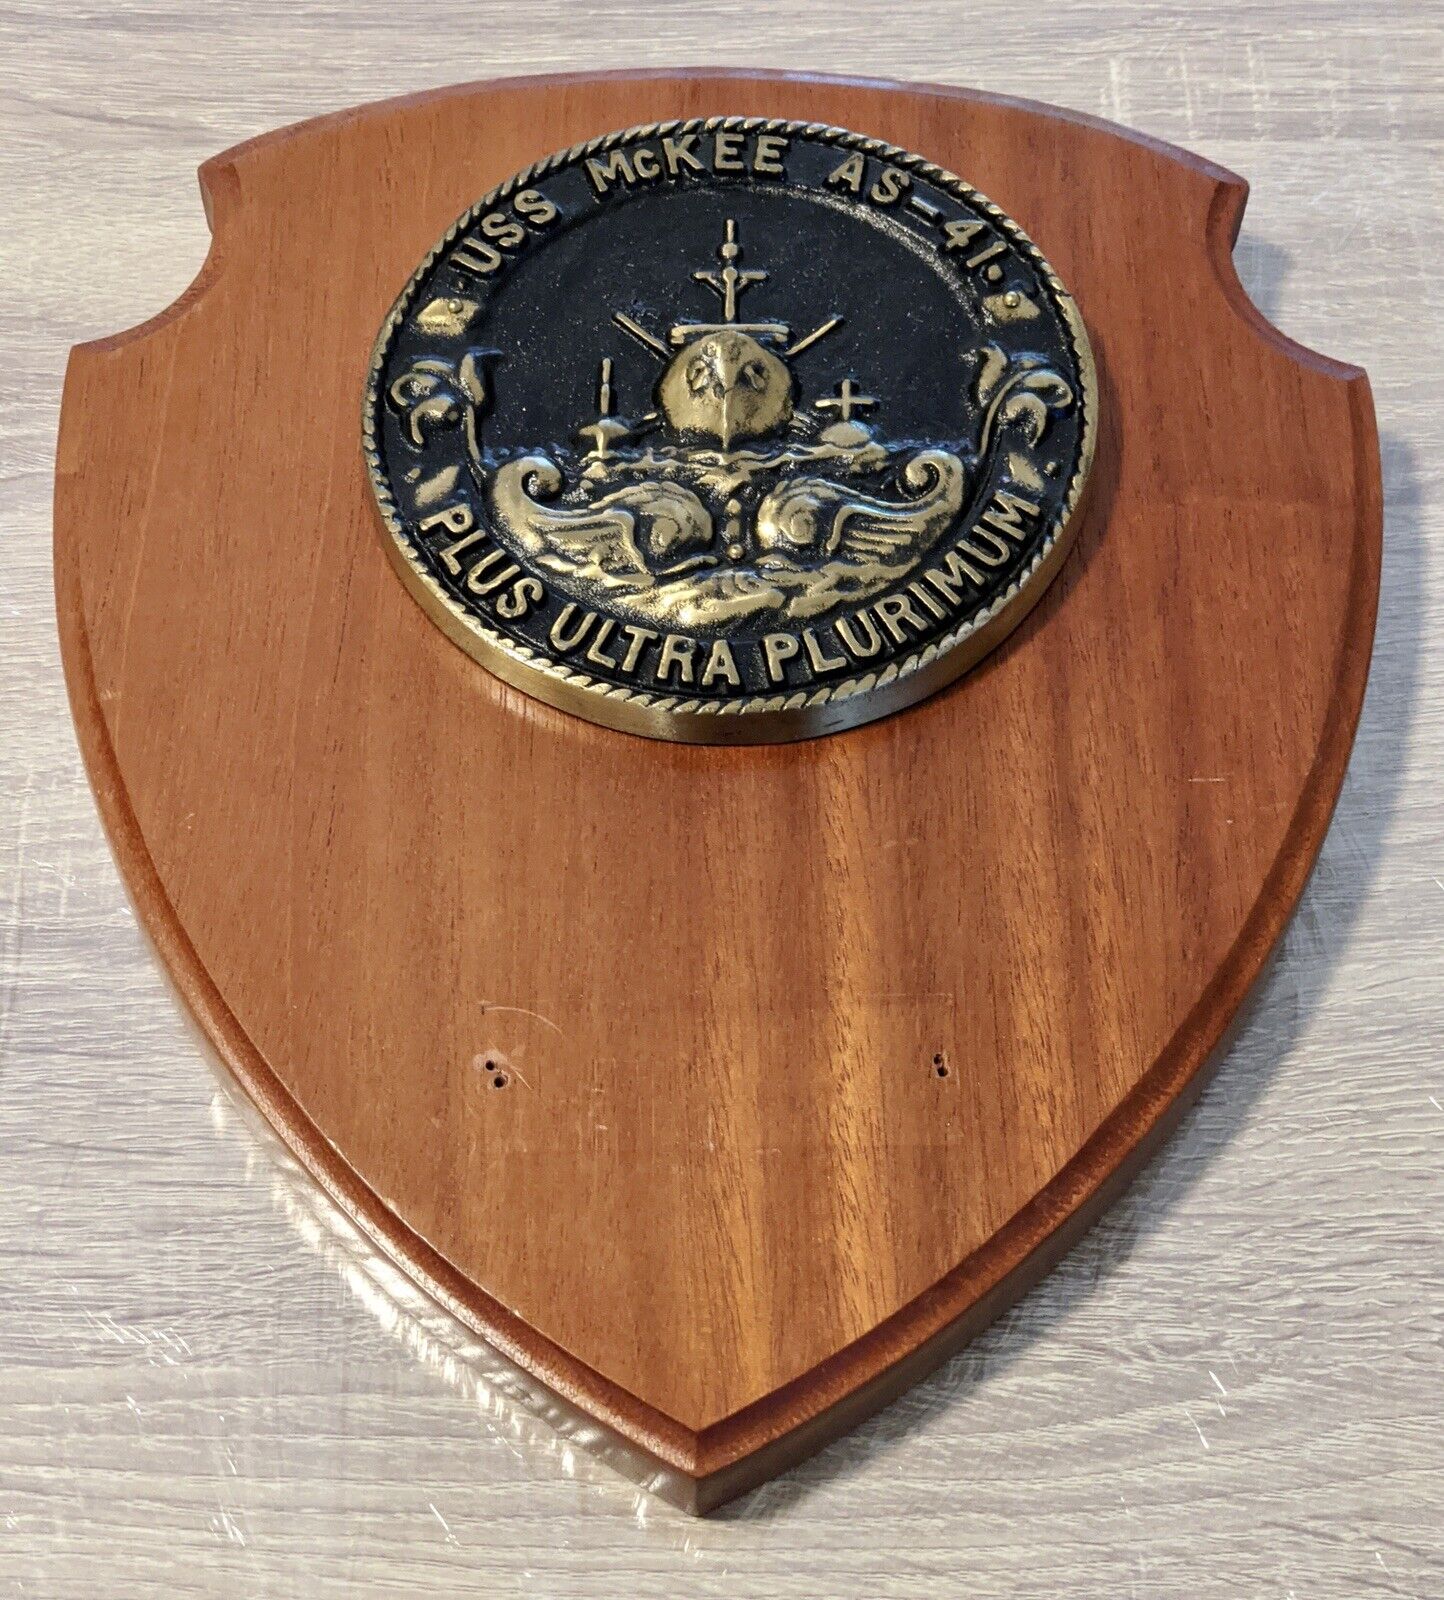 USS McKee AS-41 3 lb 11 oz weight US Navy brass plaque 1992